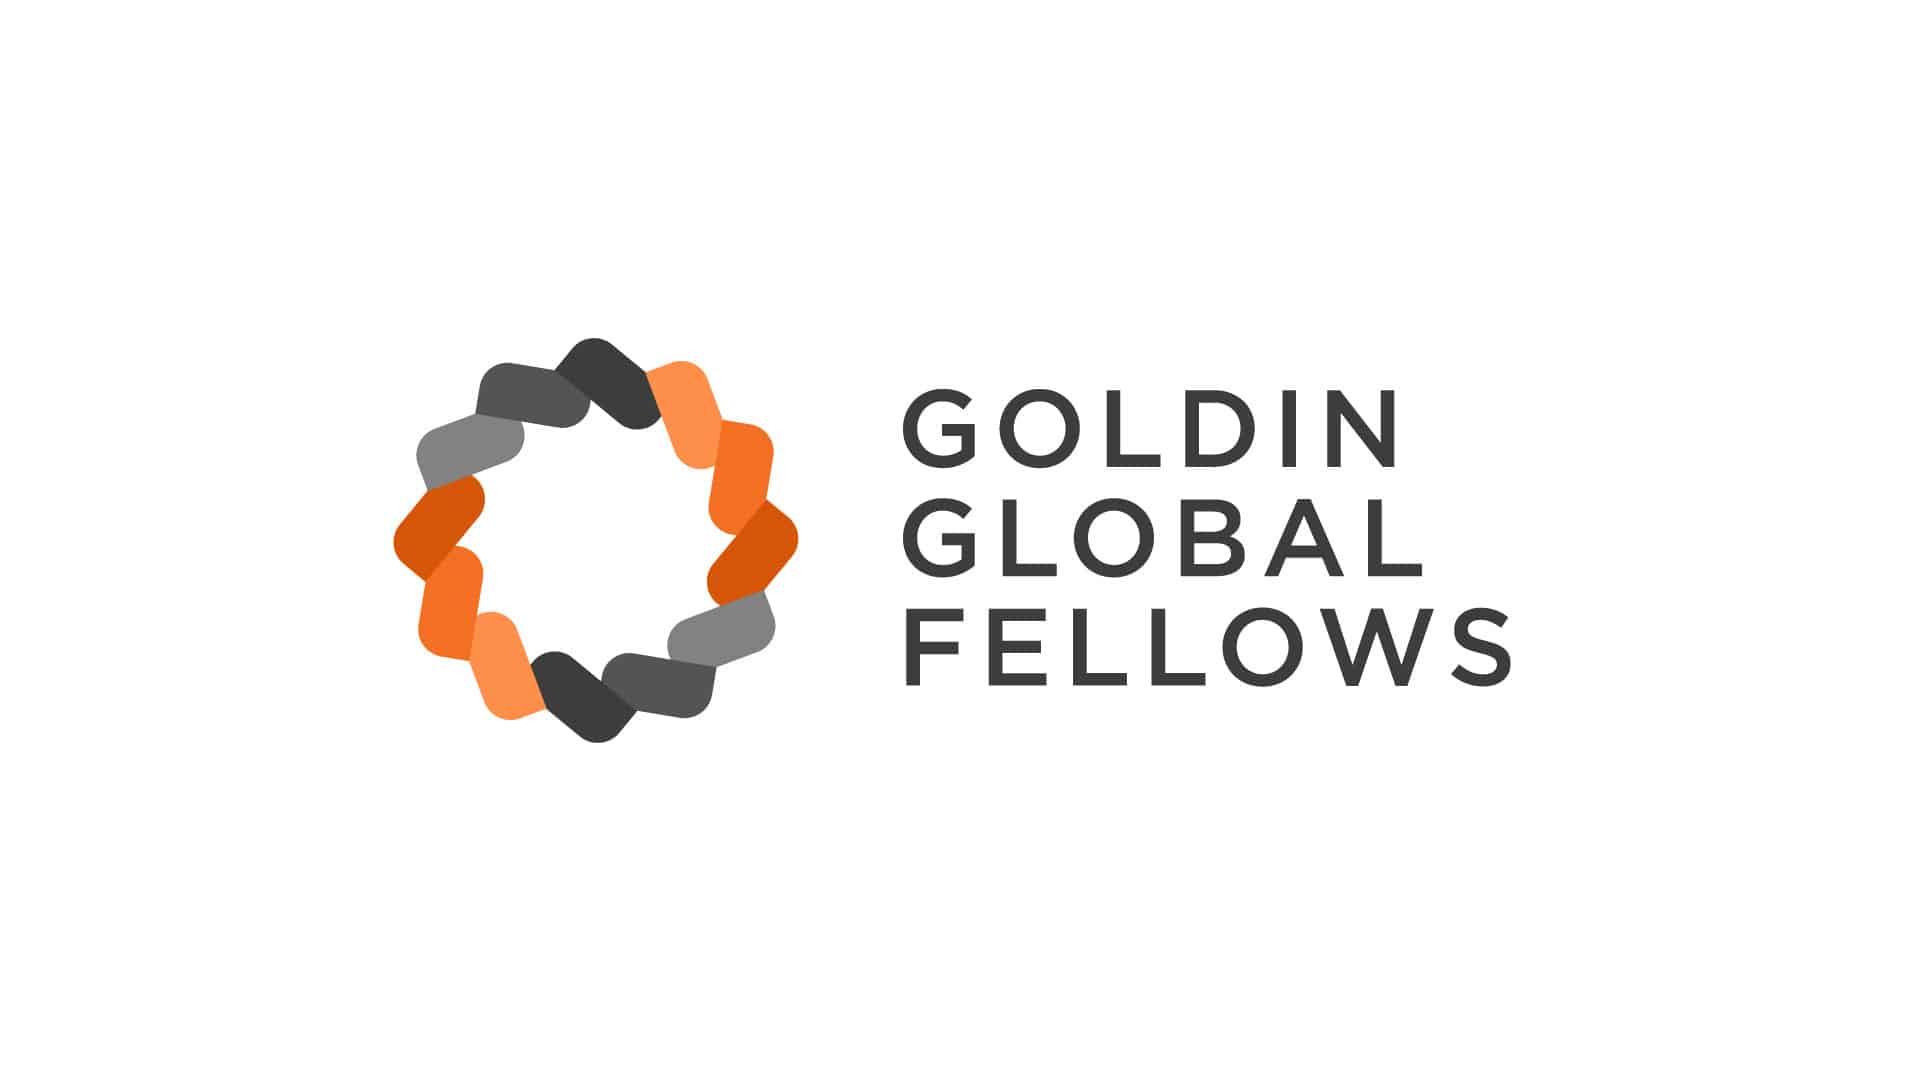 Goldin Institute Goldin Global Fellows logomark featured